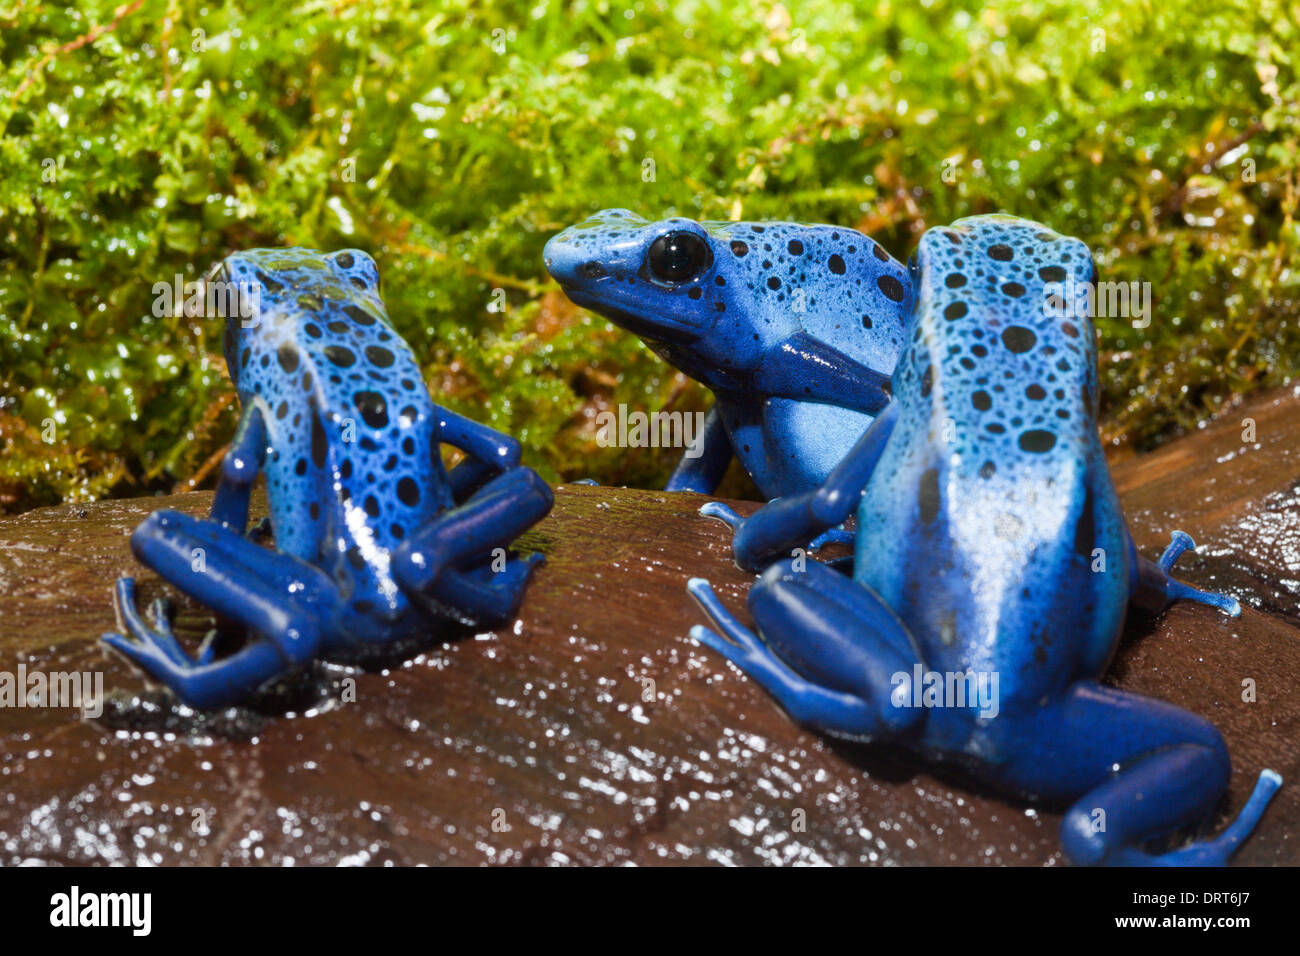 Blue Poison Dart Frog, Dendrobates tinctorius azureus, Suriname Stock Photo